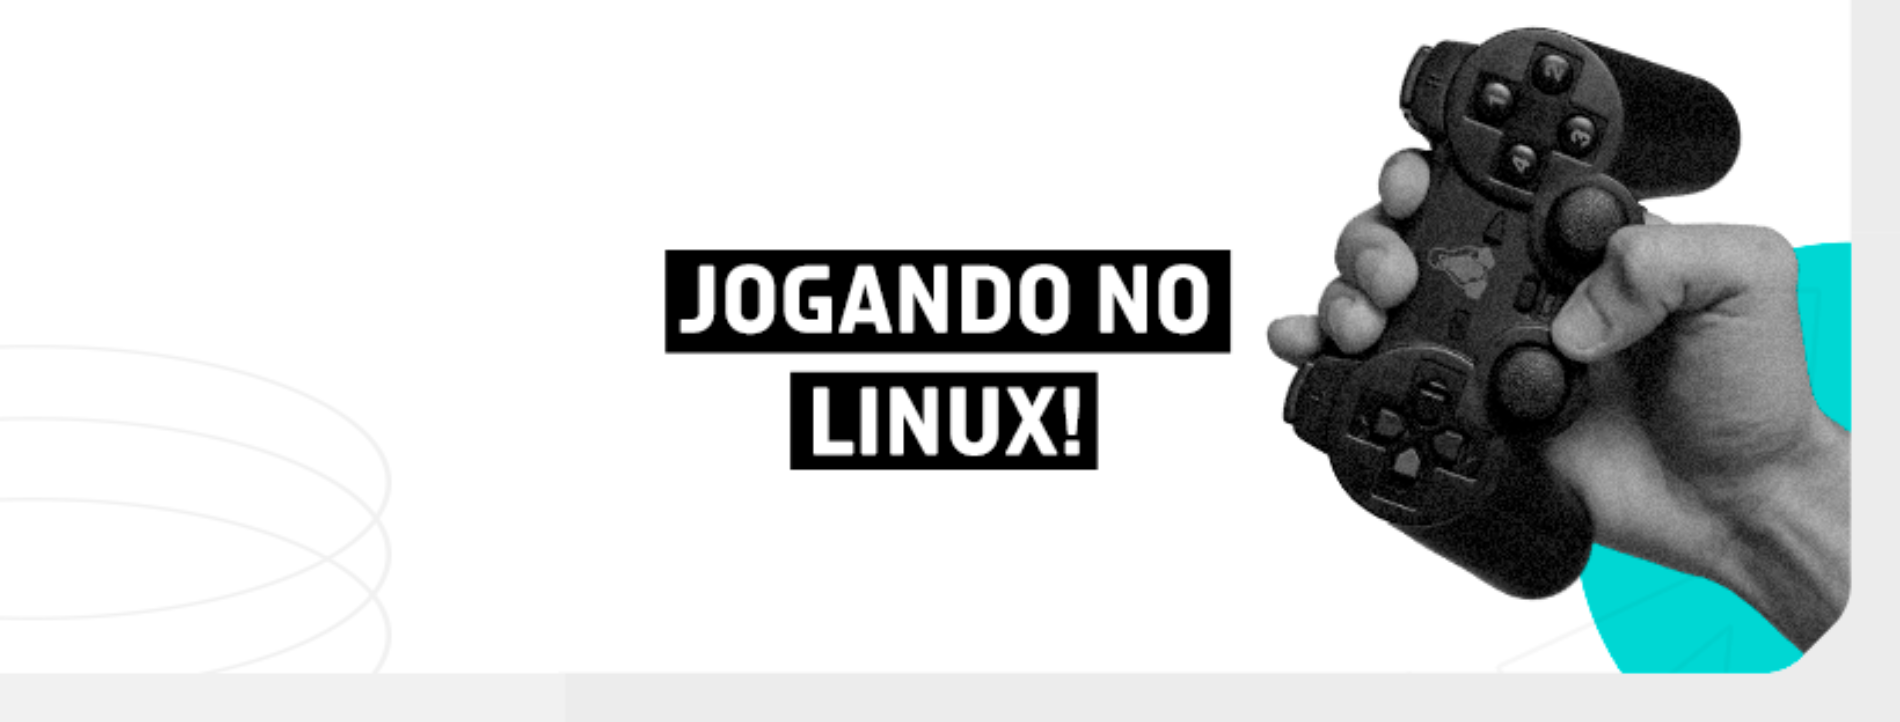 Jogando no Linux